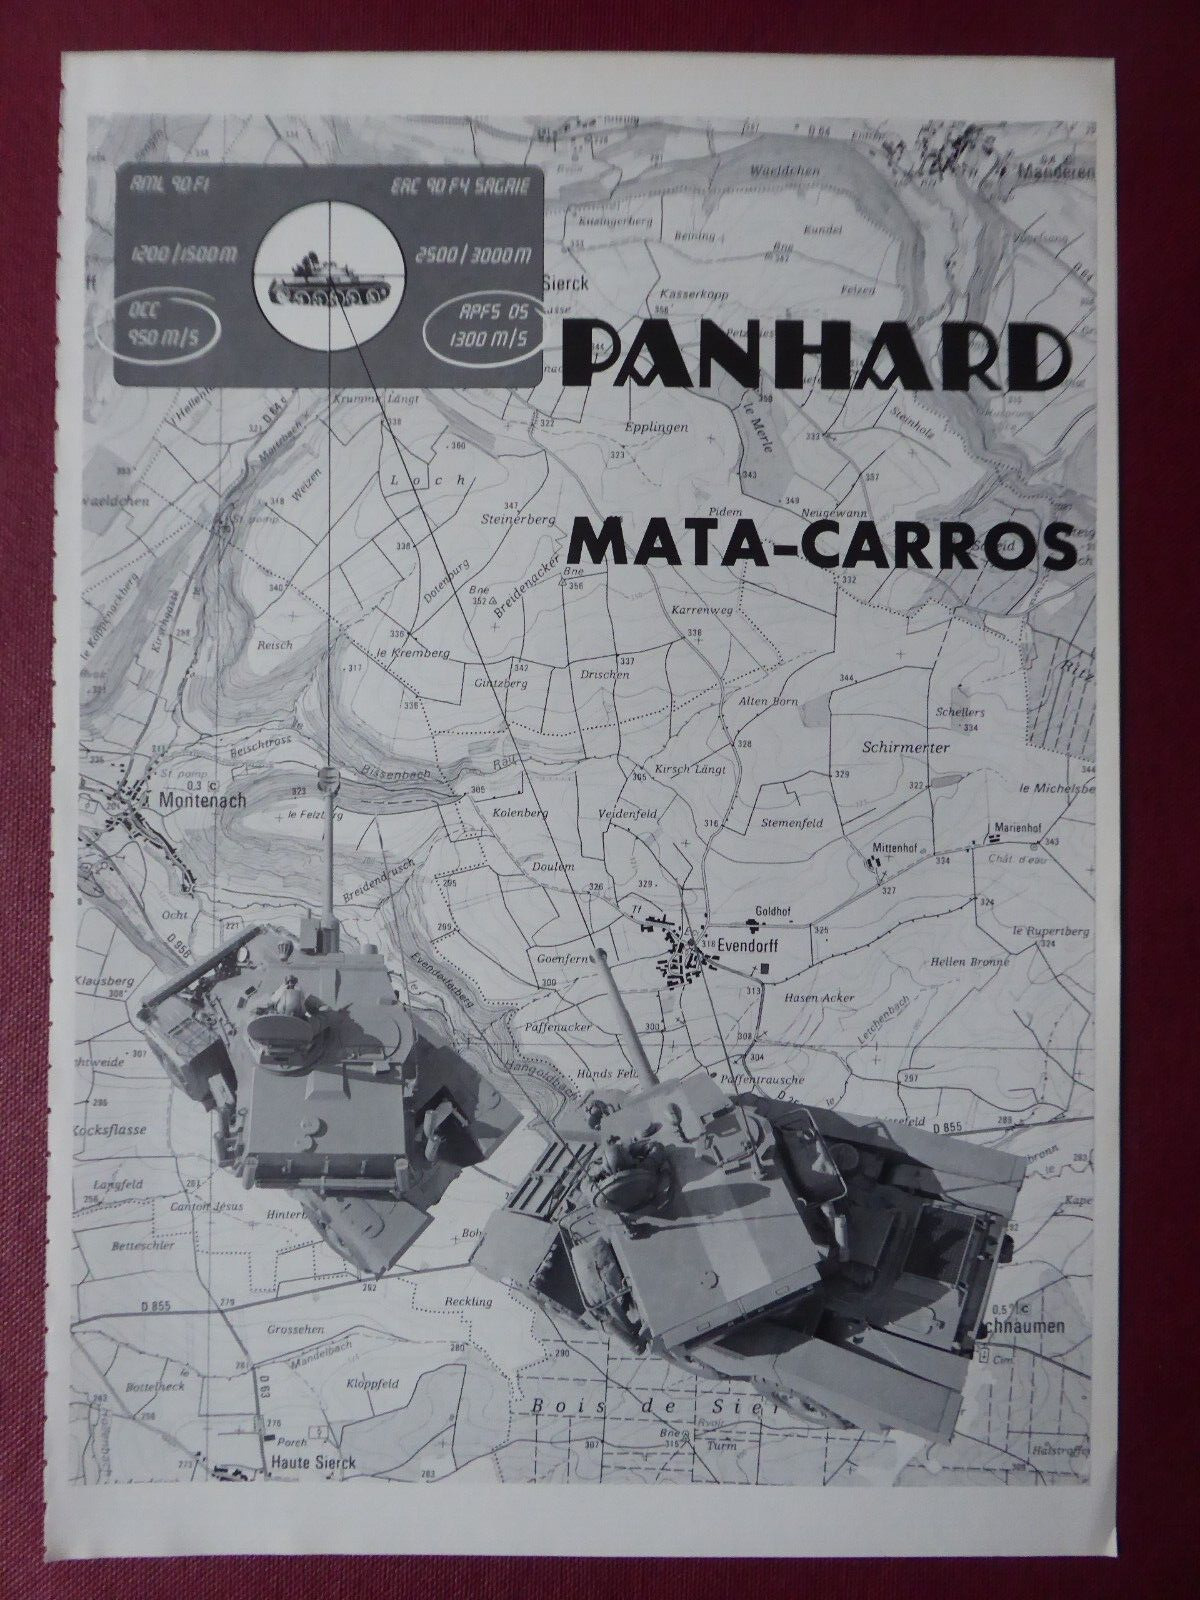 9/1984 PUB PANHARD BLINDE ERC 90F4 SAGAIE AML 90 ORIGINAL SPANISH AD